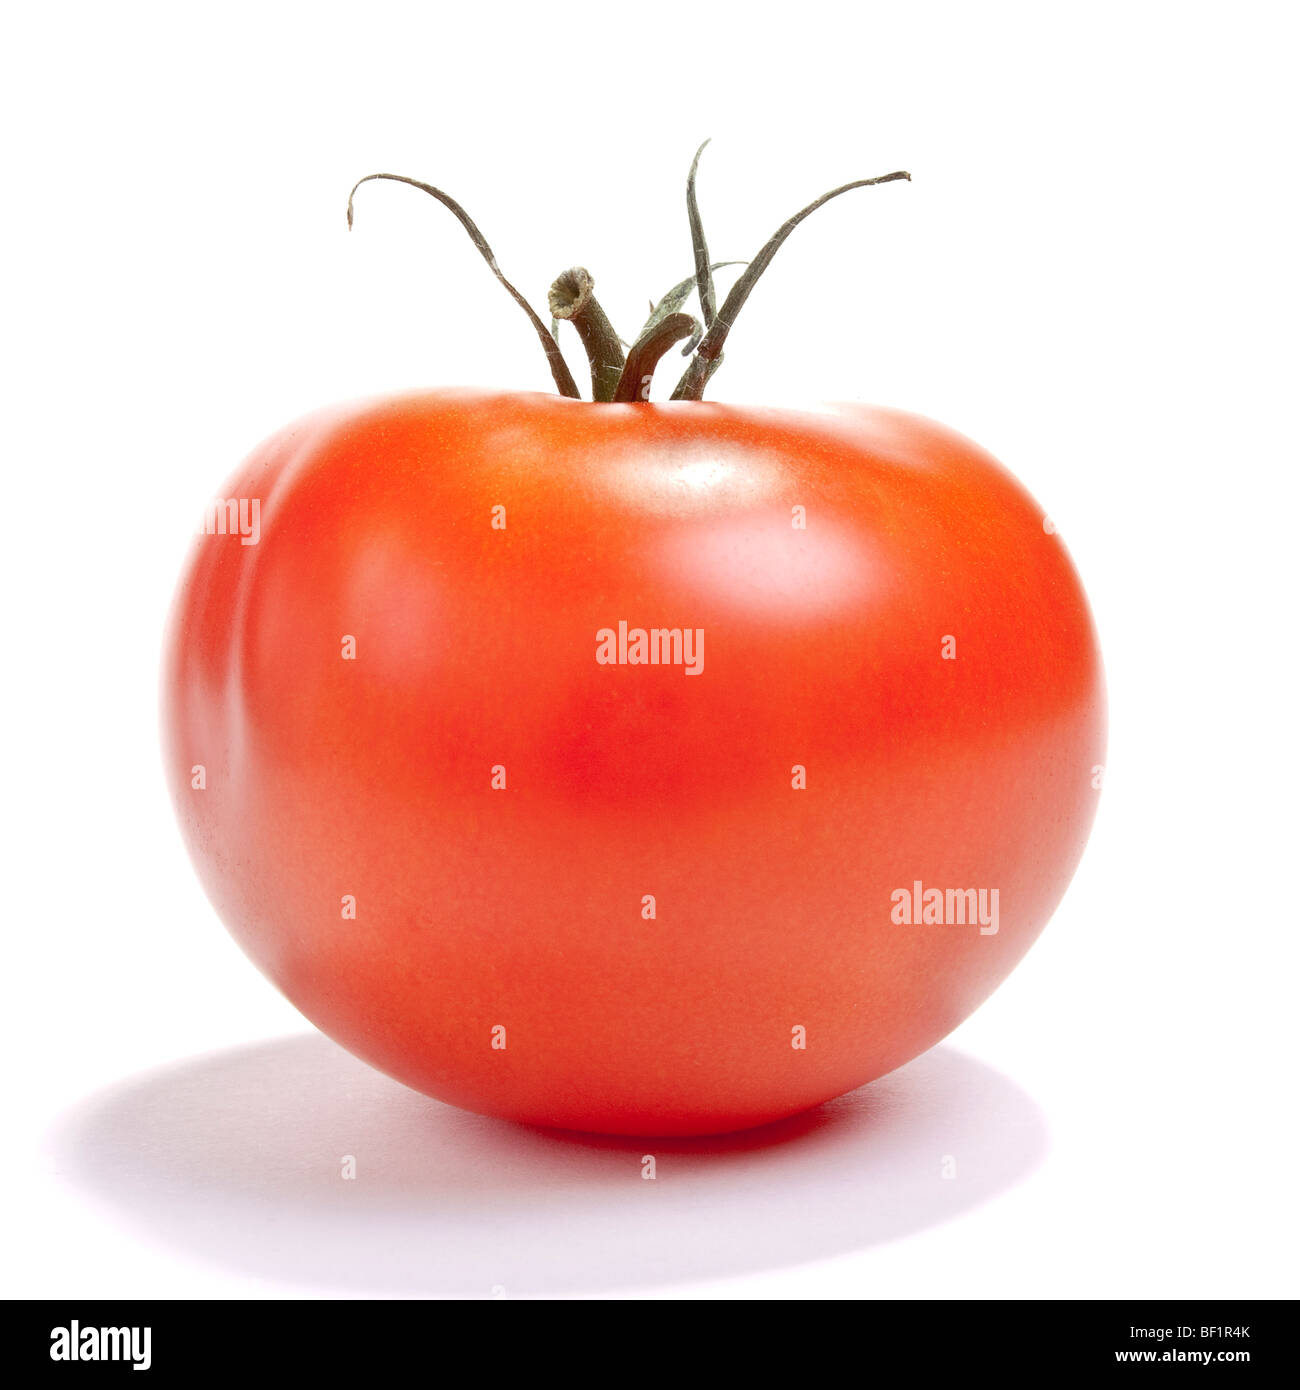 Tomate rouge mûre unique contre isolé sur fond blanc. Banque D'Images